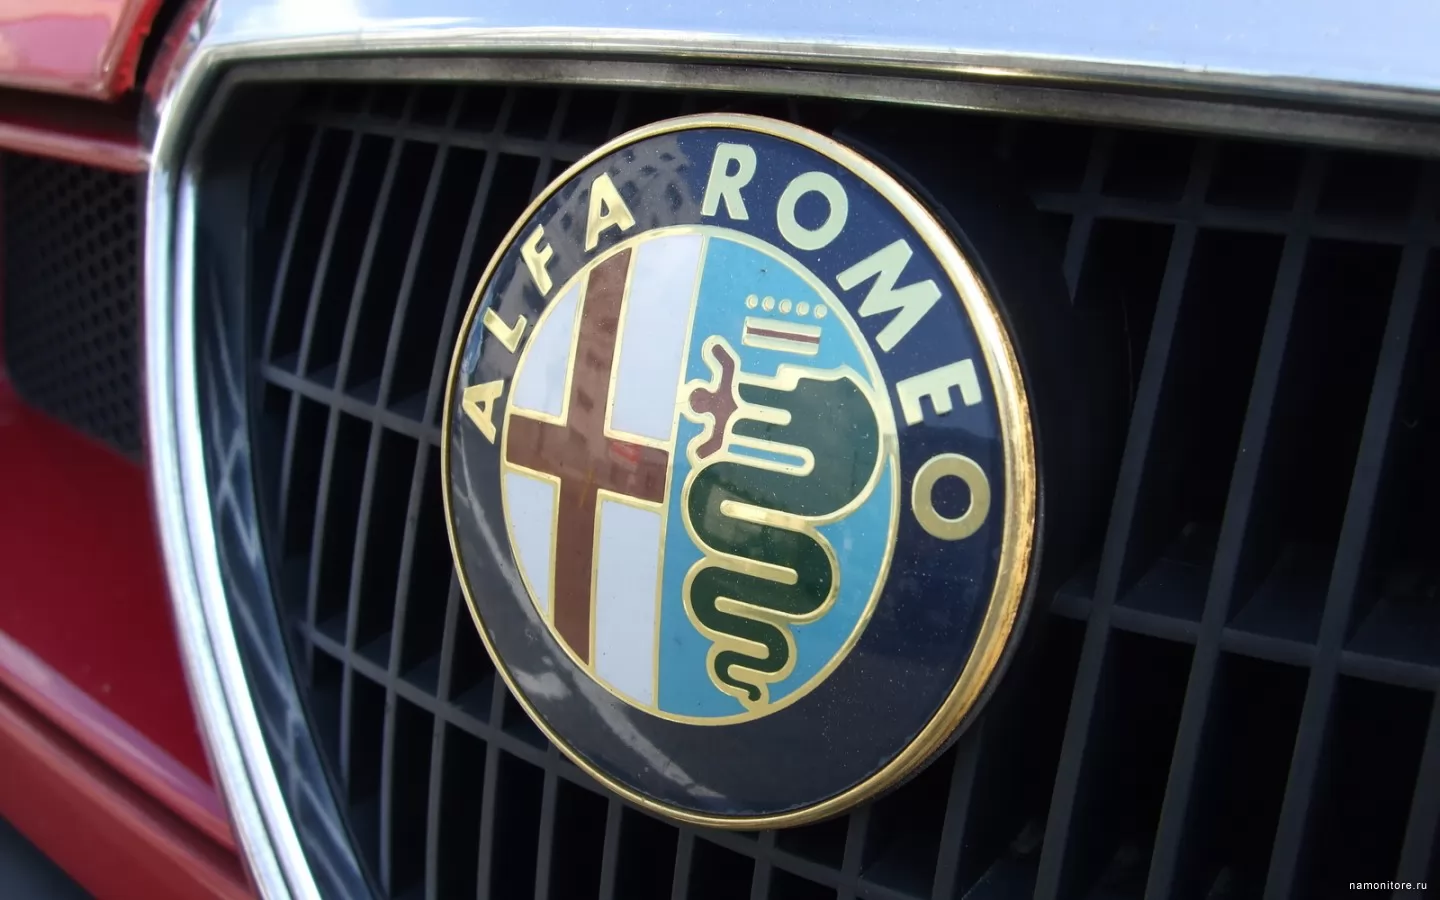  Alfa Romeo, Alfa Romeo, ,  